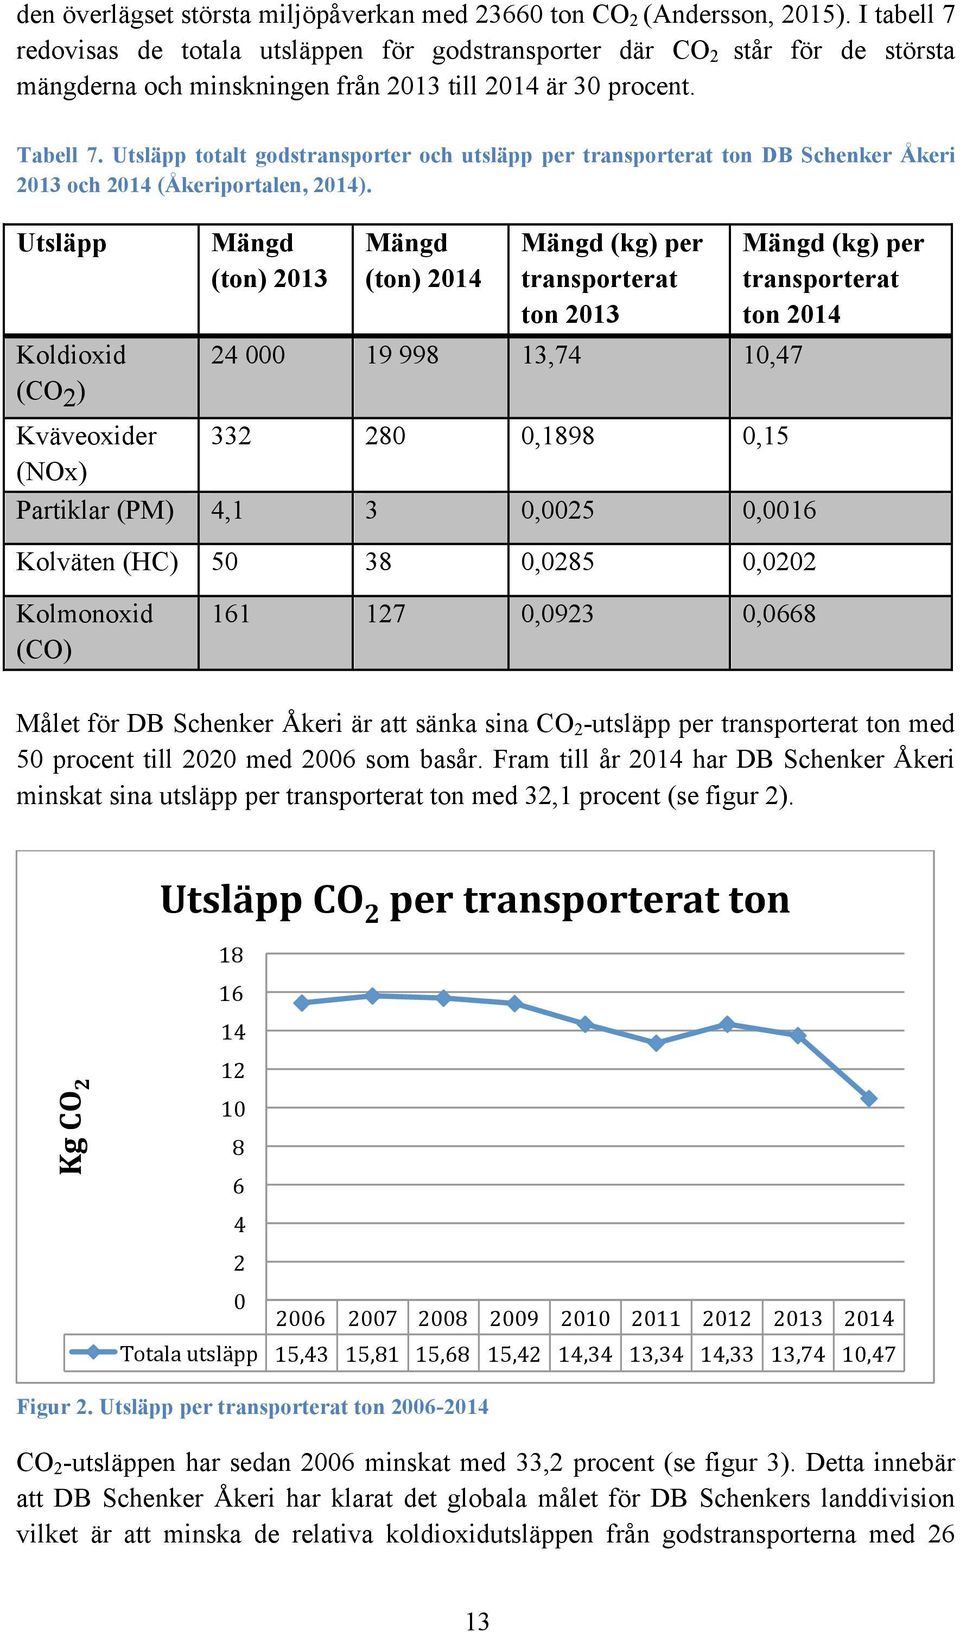 Utsläpp totalt godstransporter och utsläpp per transporterat ton DB Schenker Åkeri 2013 och 2014 (Åkeriportalen, 2014).